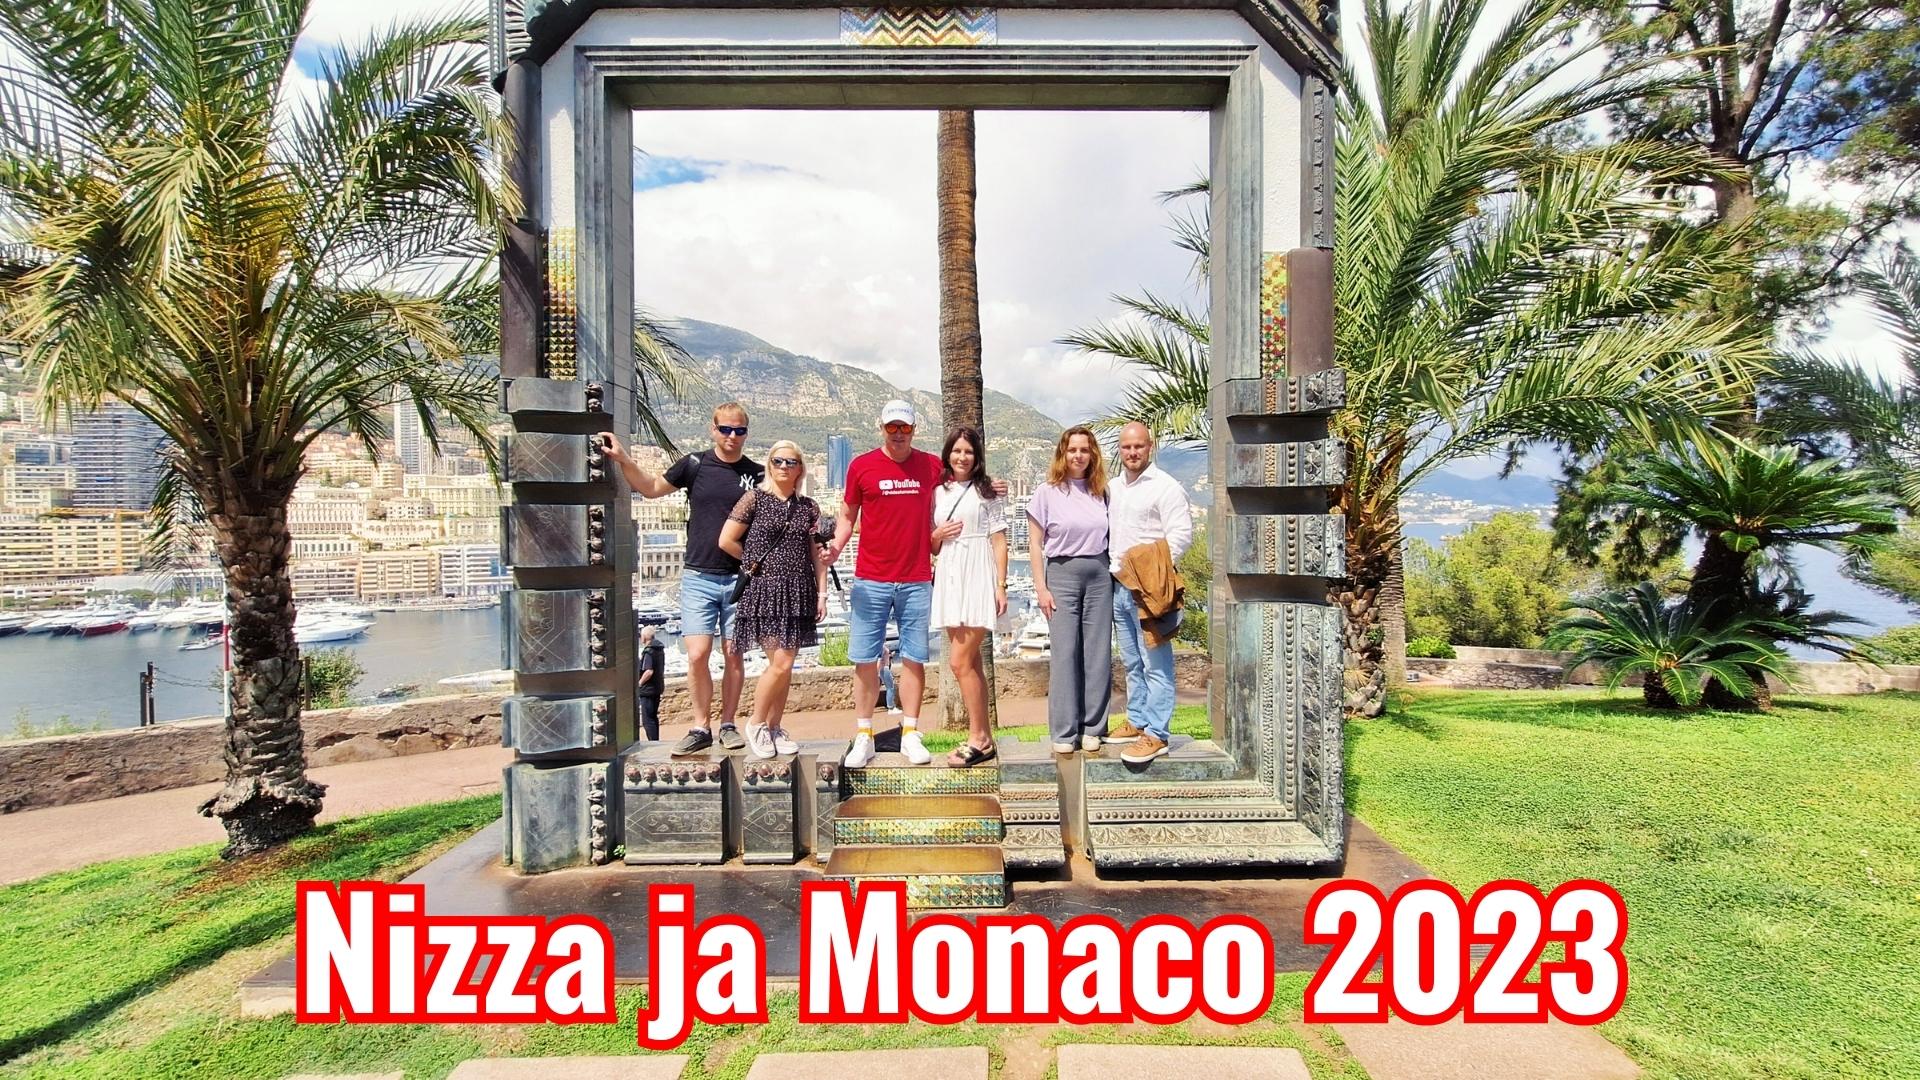 Nizza ja Monaco 2023